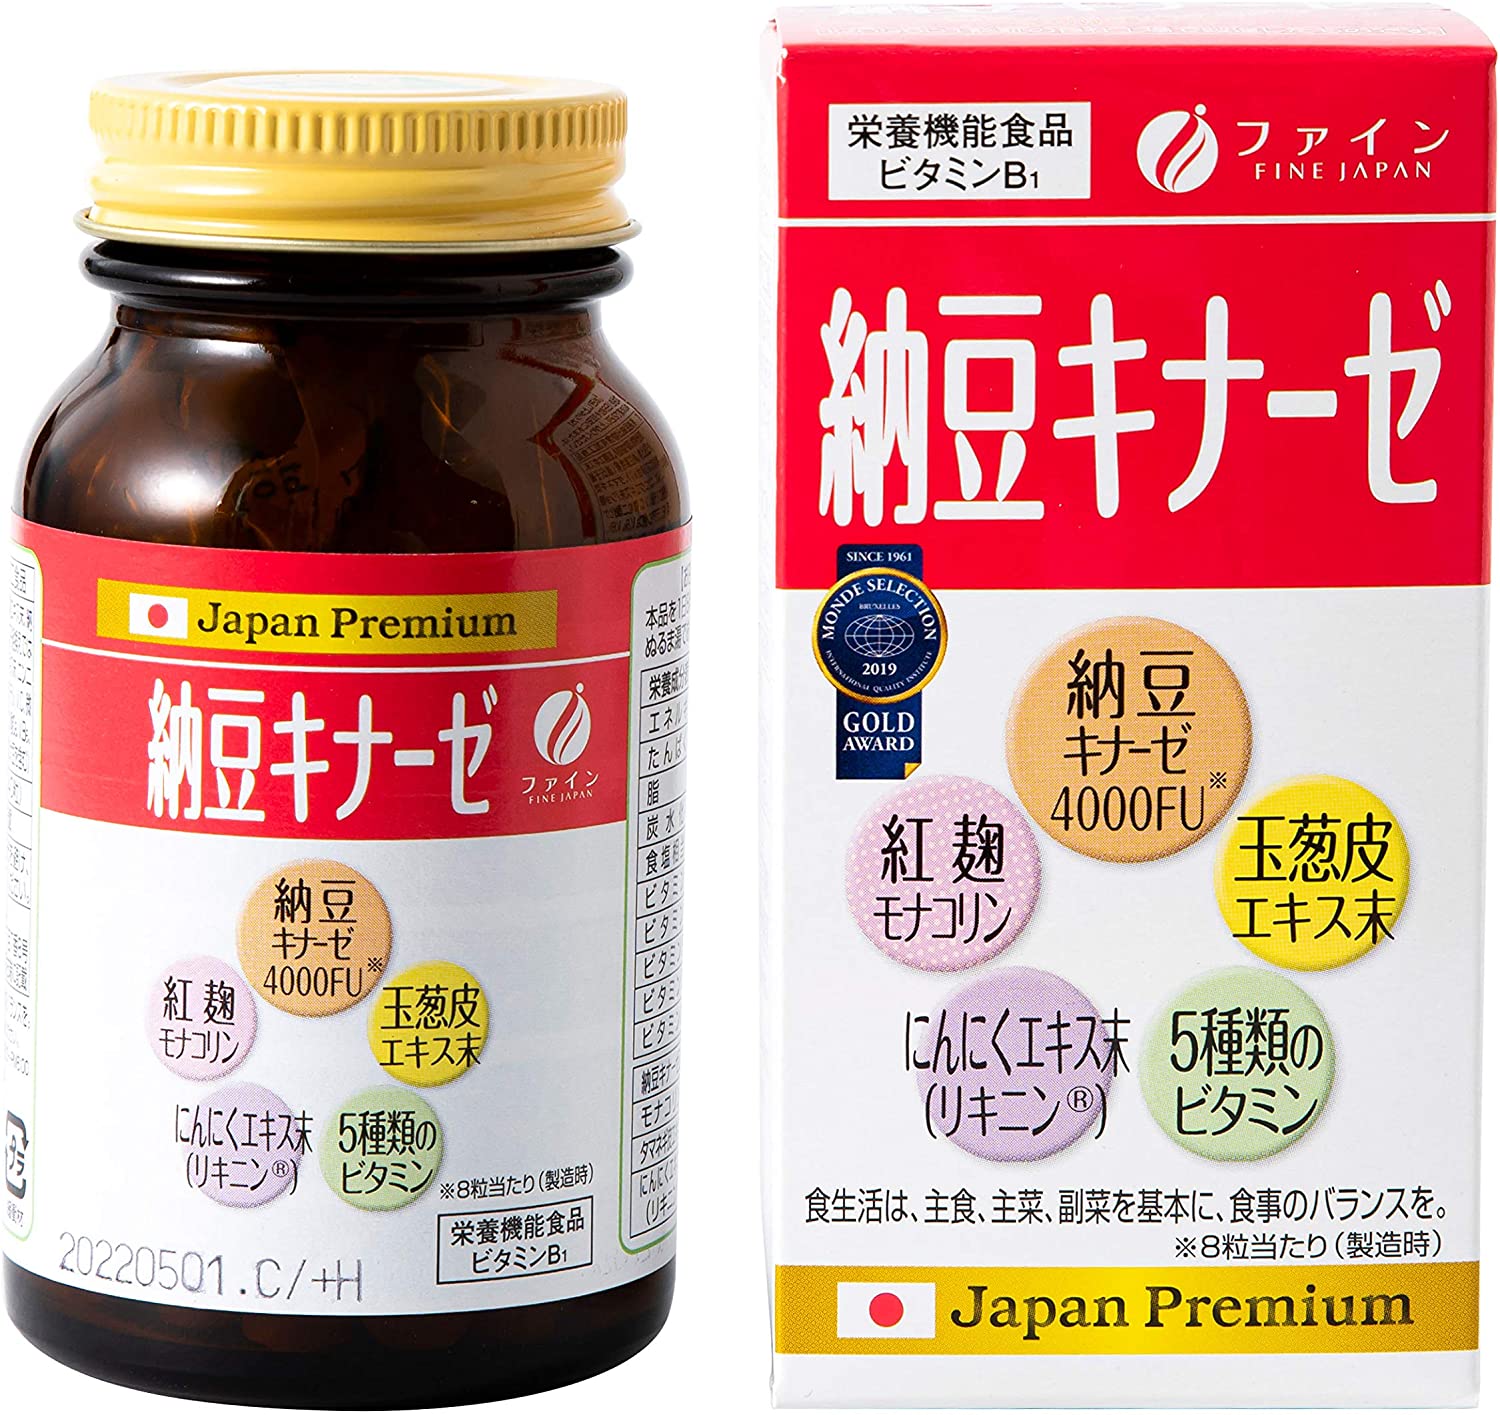 FINE JAPAN NATTOKINAZE - Nattokinase (soybean enzyme), complex for 30 days